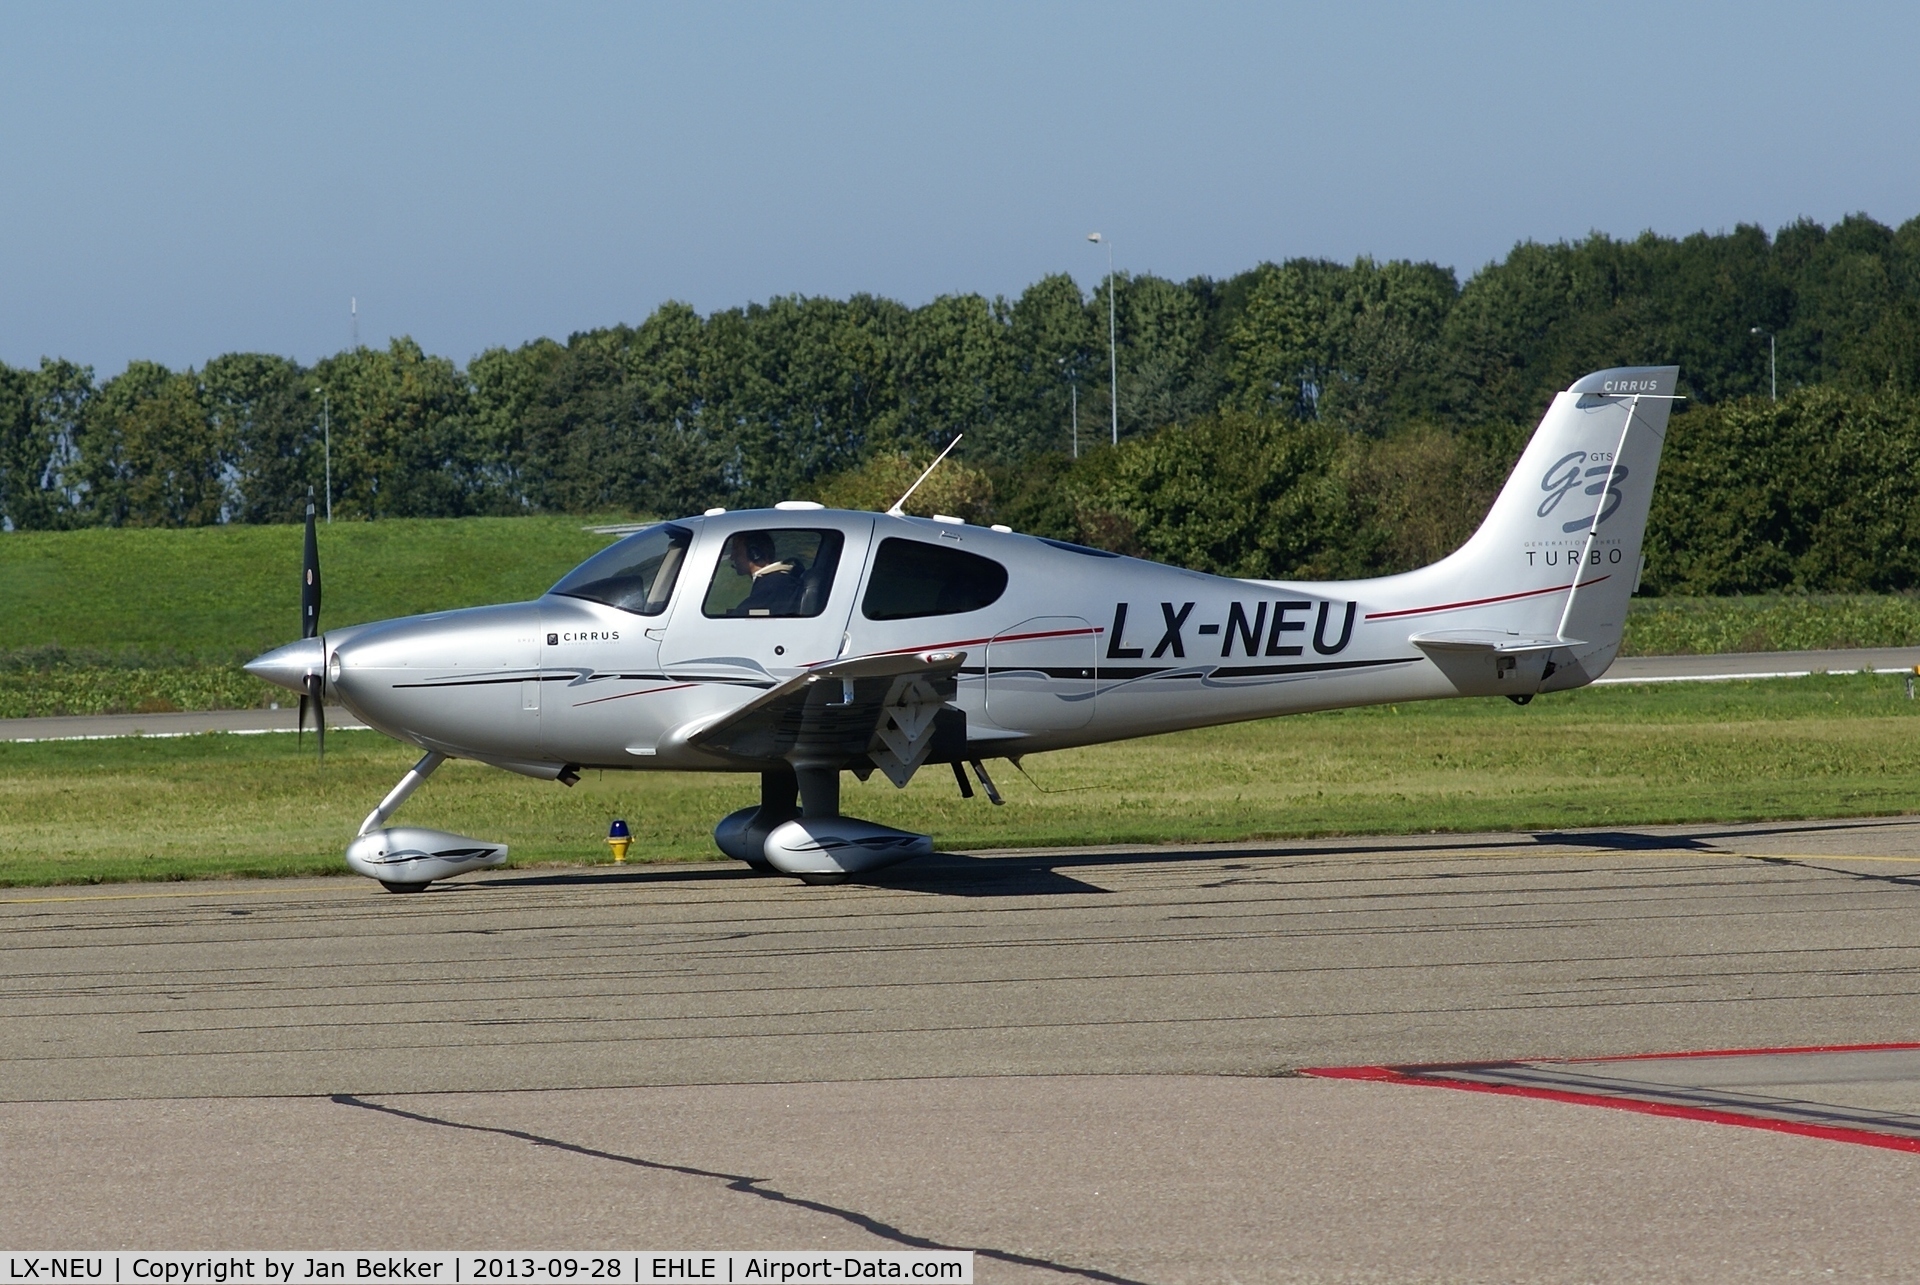 LX-NEU, 2007 Cirrus SR22 G3 GTS Turbo C/N 2688, Airport Lelystad